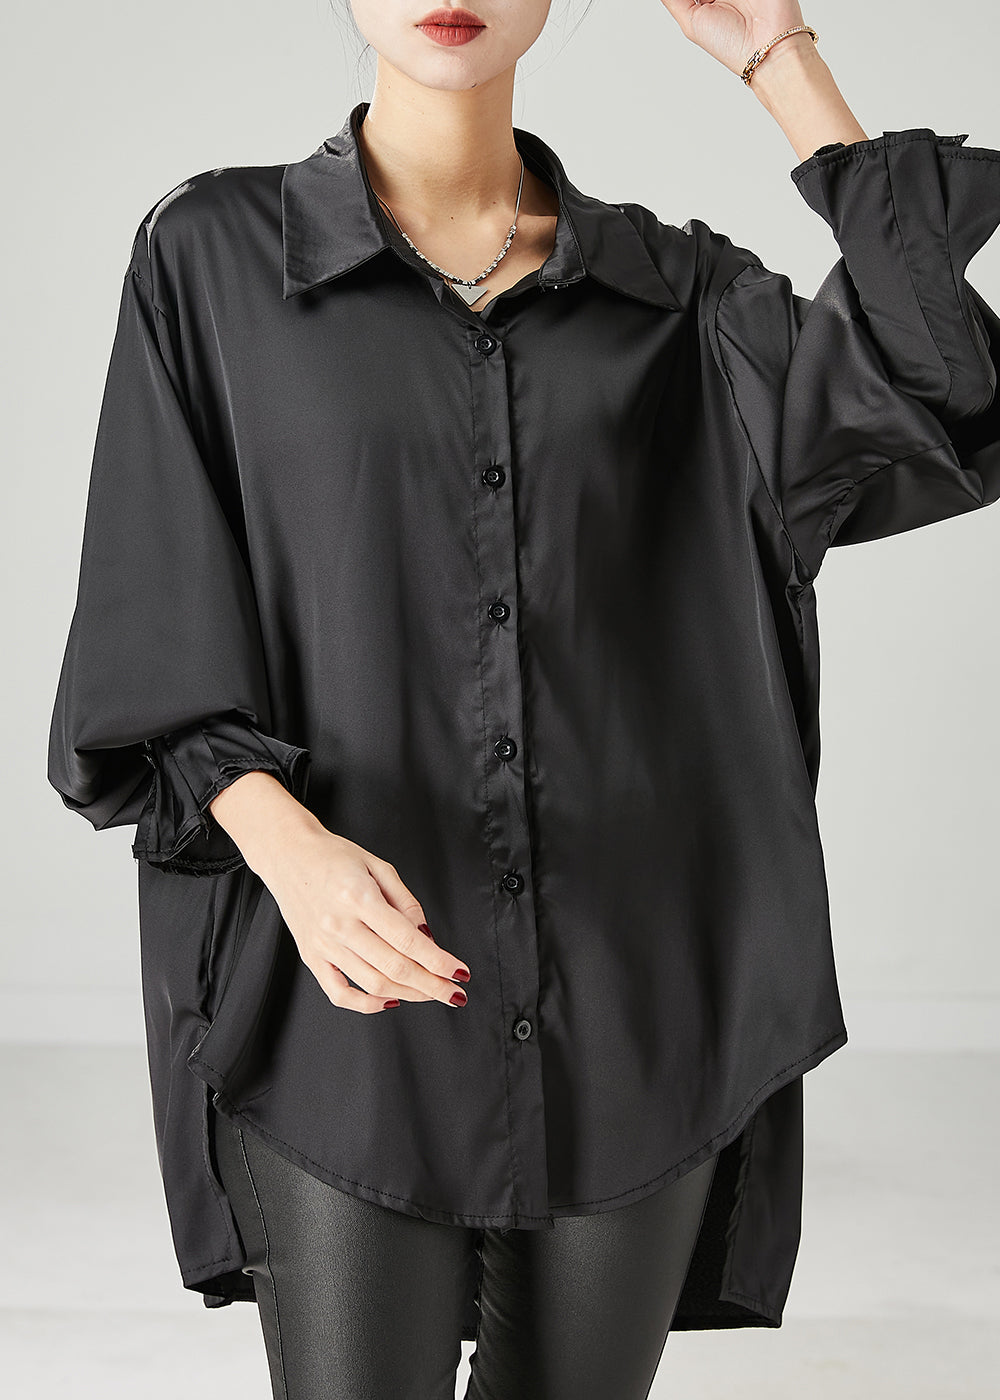 Boho Black Oversized draping Chiffon Blouses Spring YU1051